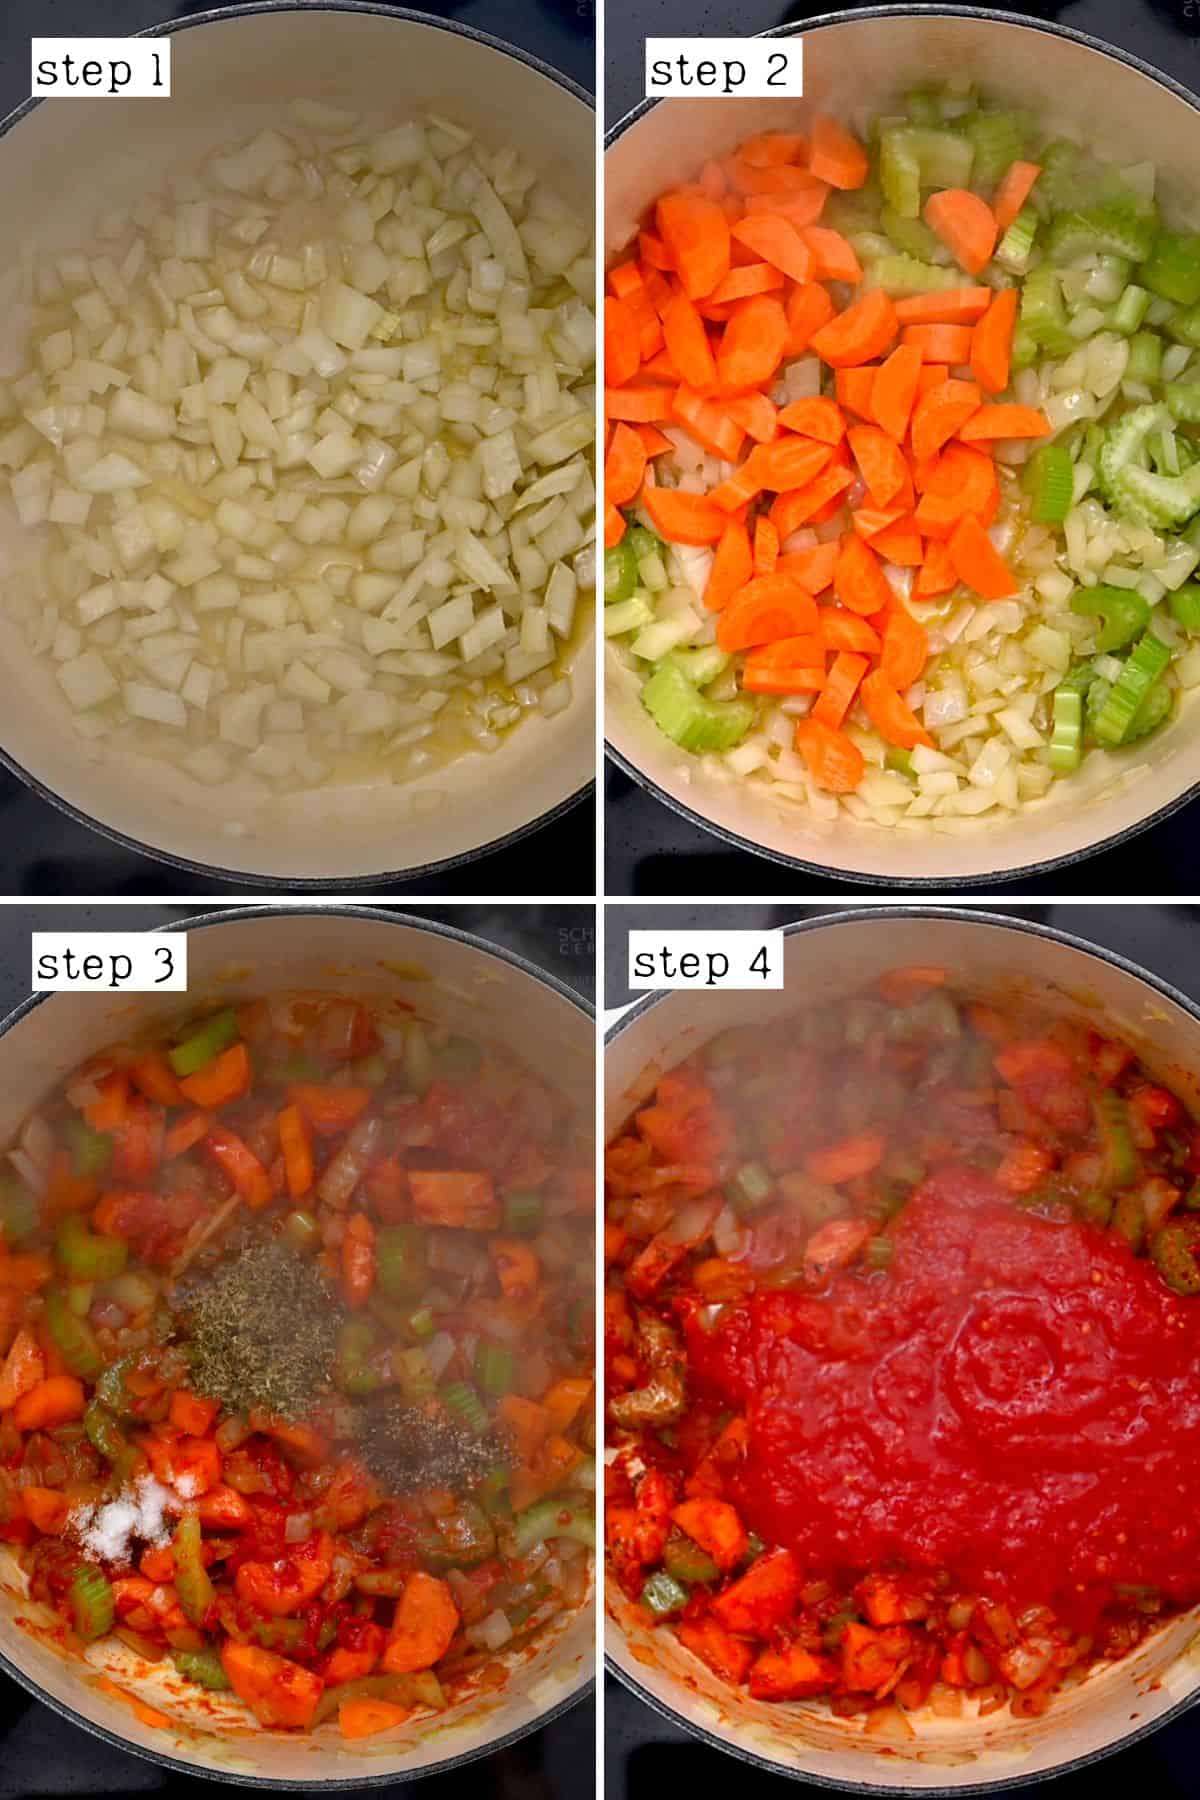 Steps for cooking vegetables